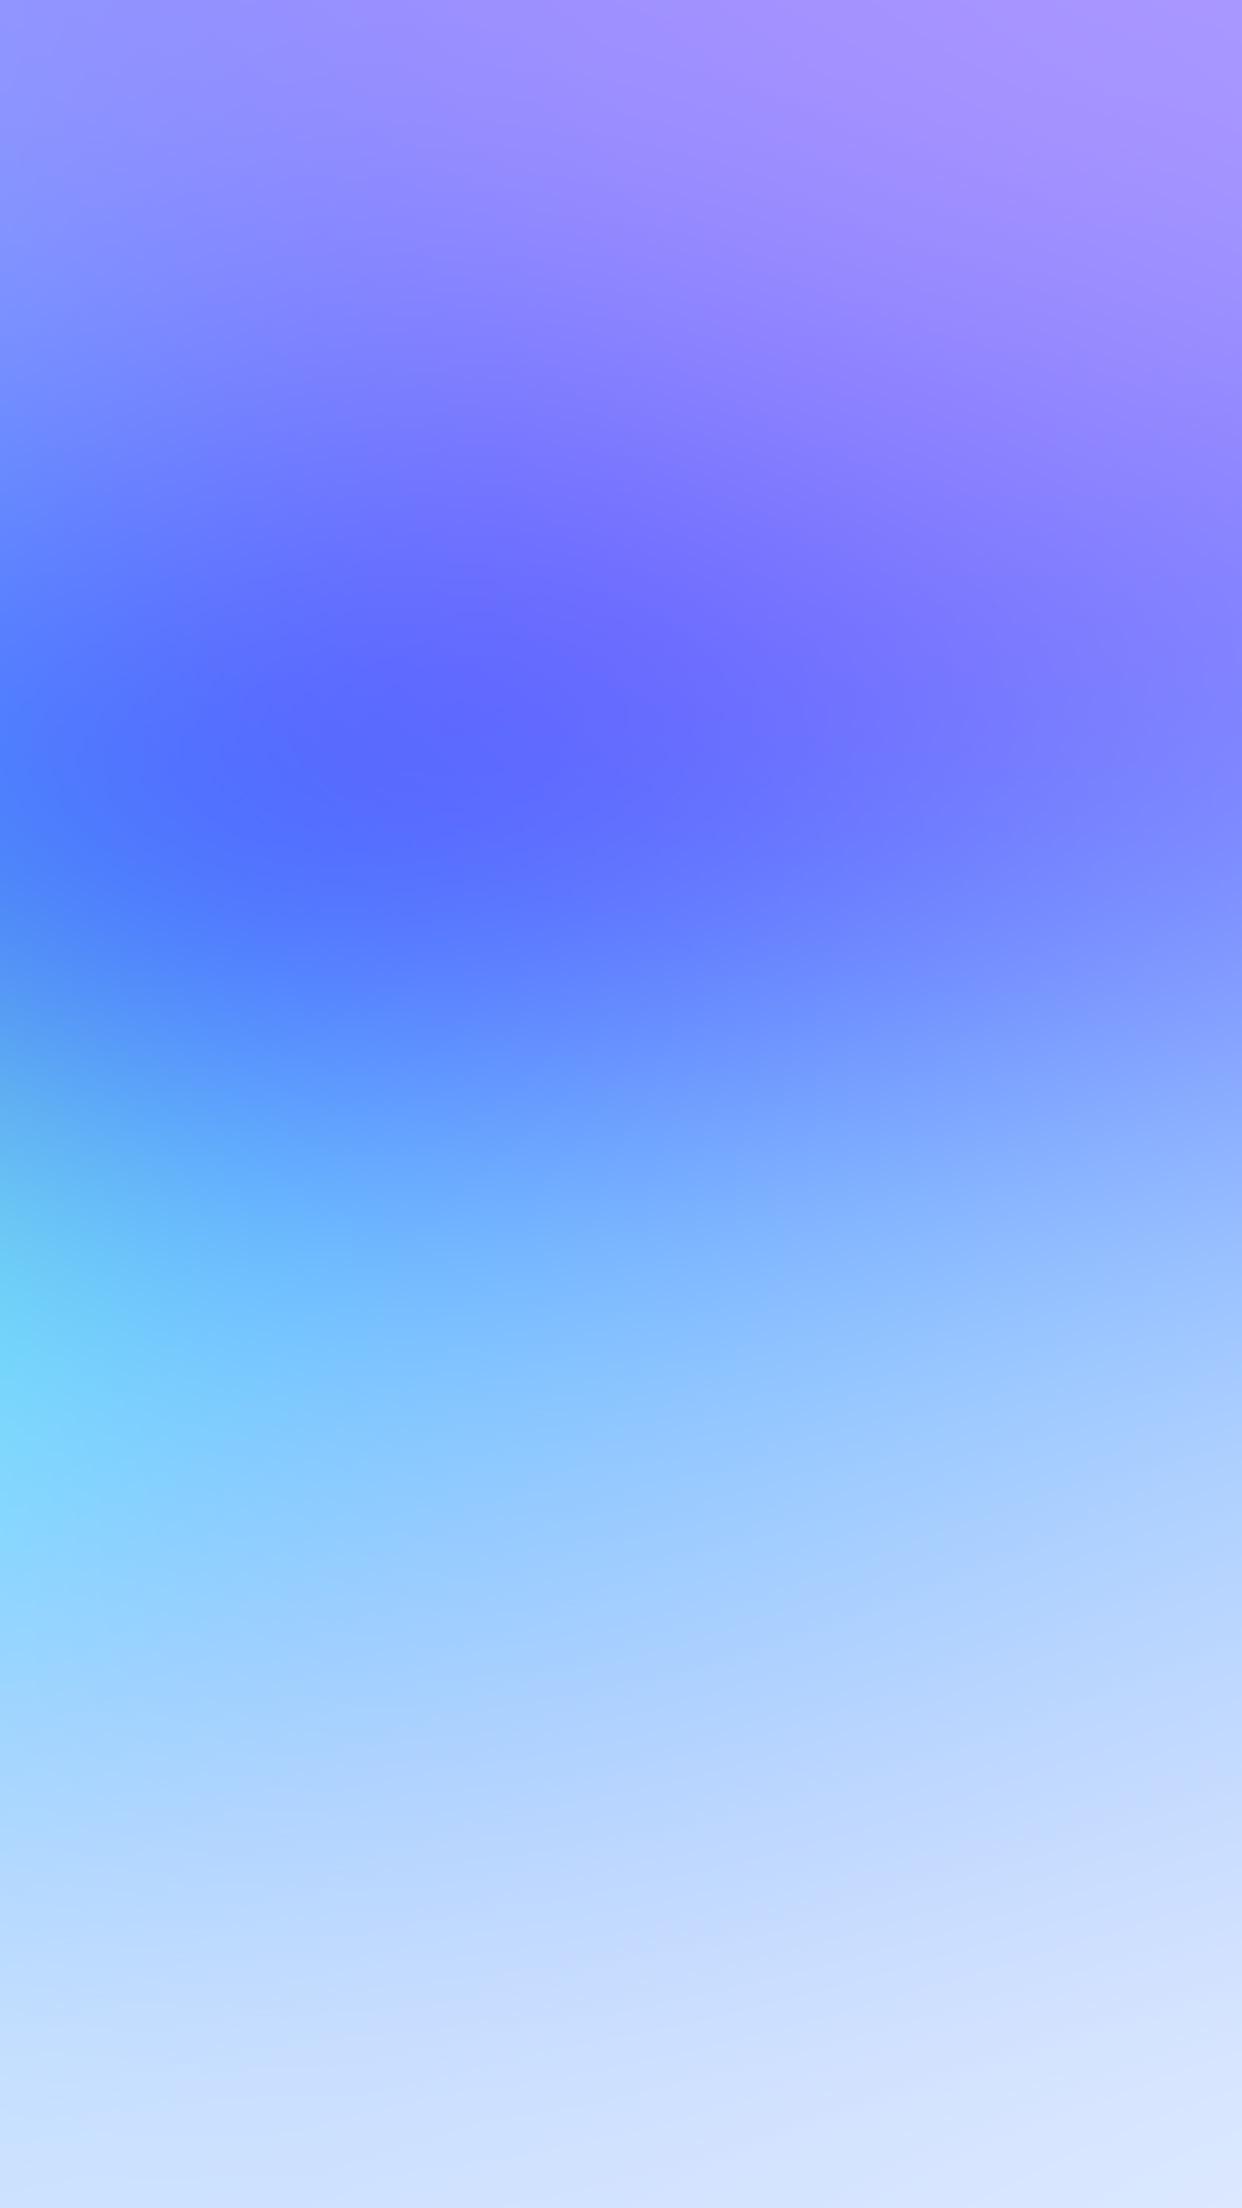 Khám phá hình nền động Pastel Ombré với hiệu ứng màu sắc tuyệt đẹp và sống động. Hình nền này sẽ khiến bạn cảm thấy thư thái và dễ chịu. Chẳng có gì tuyệt vời hơn khi có một hình nền vô cùng bắt mắt trên màn hình của bạn.